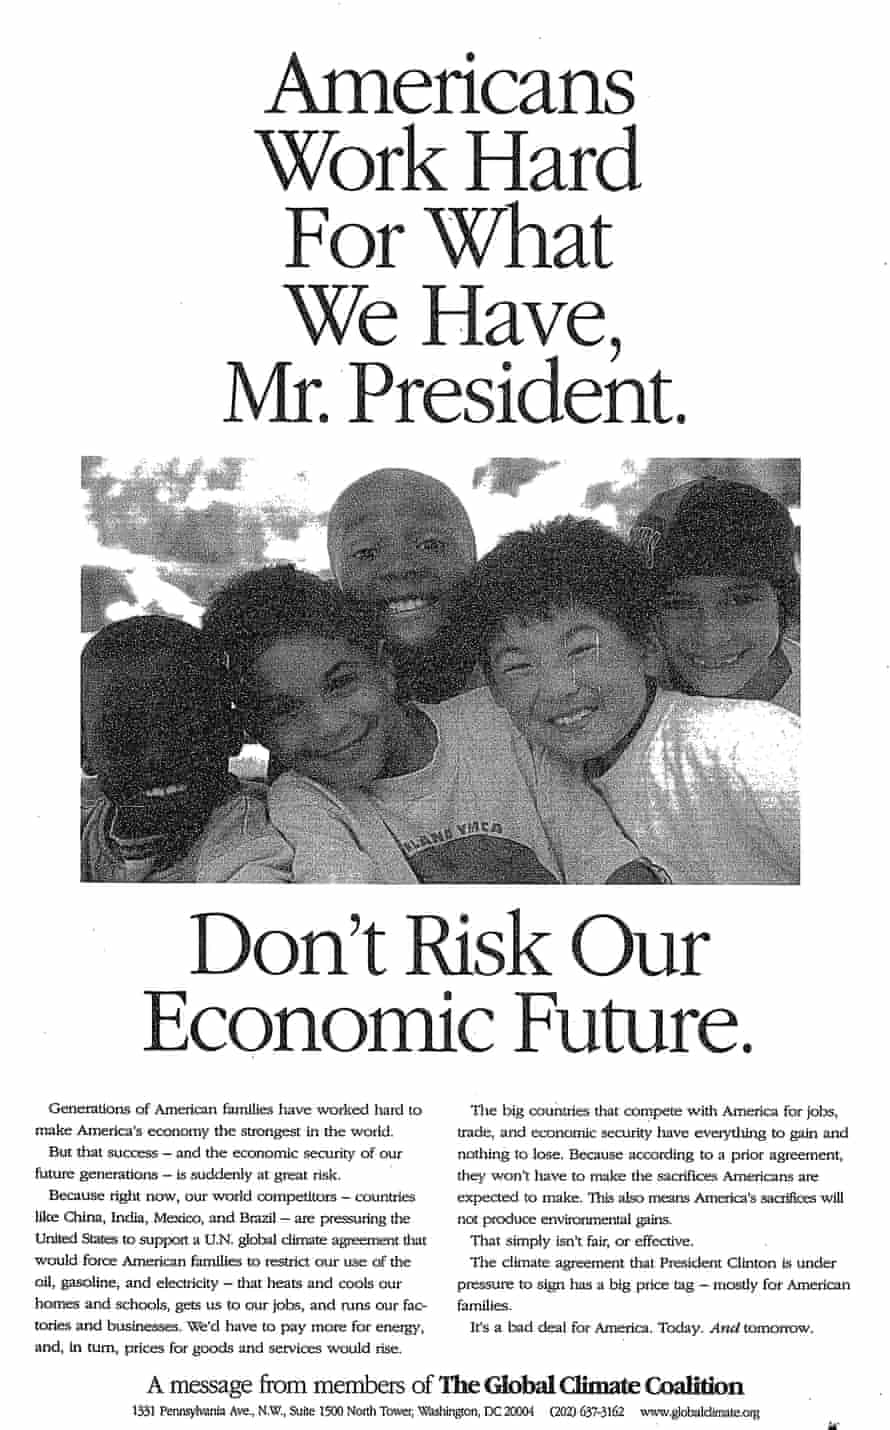 Alianța Globală pentru Climă, Declarația din 1997: "Americanii muncesc din greu pentru ceea ce avem, domnule președinte.  Nu riscați viitorul nostru economic."